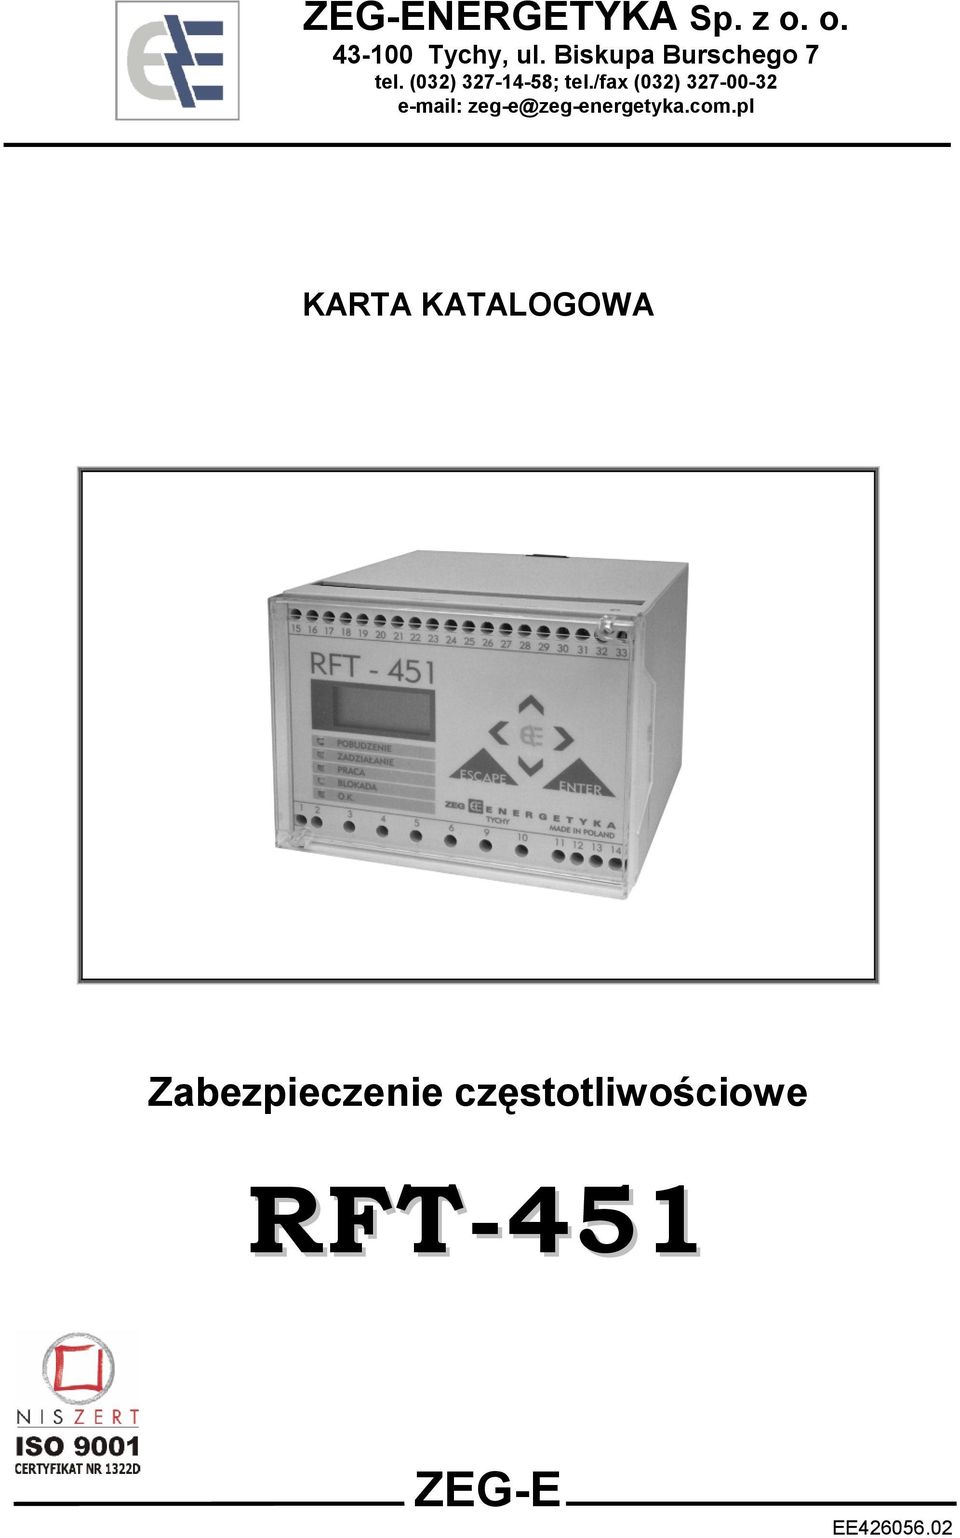 /fax (032) 327-00-32 e-mail: zeg-e@zeg-energetyka.